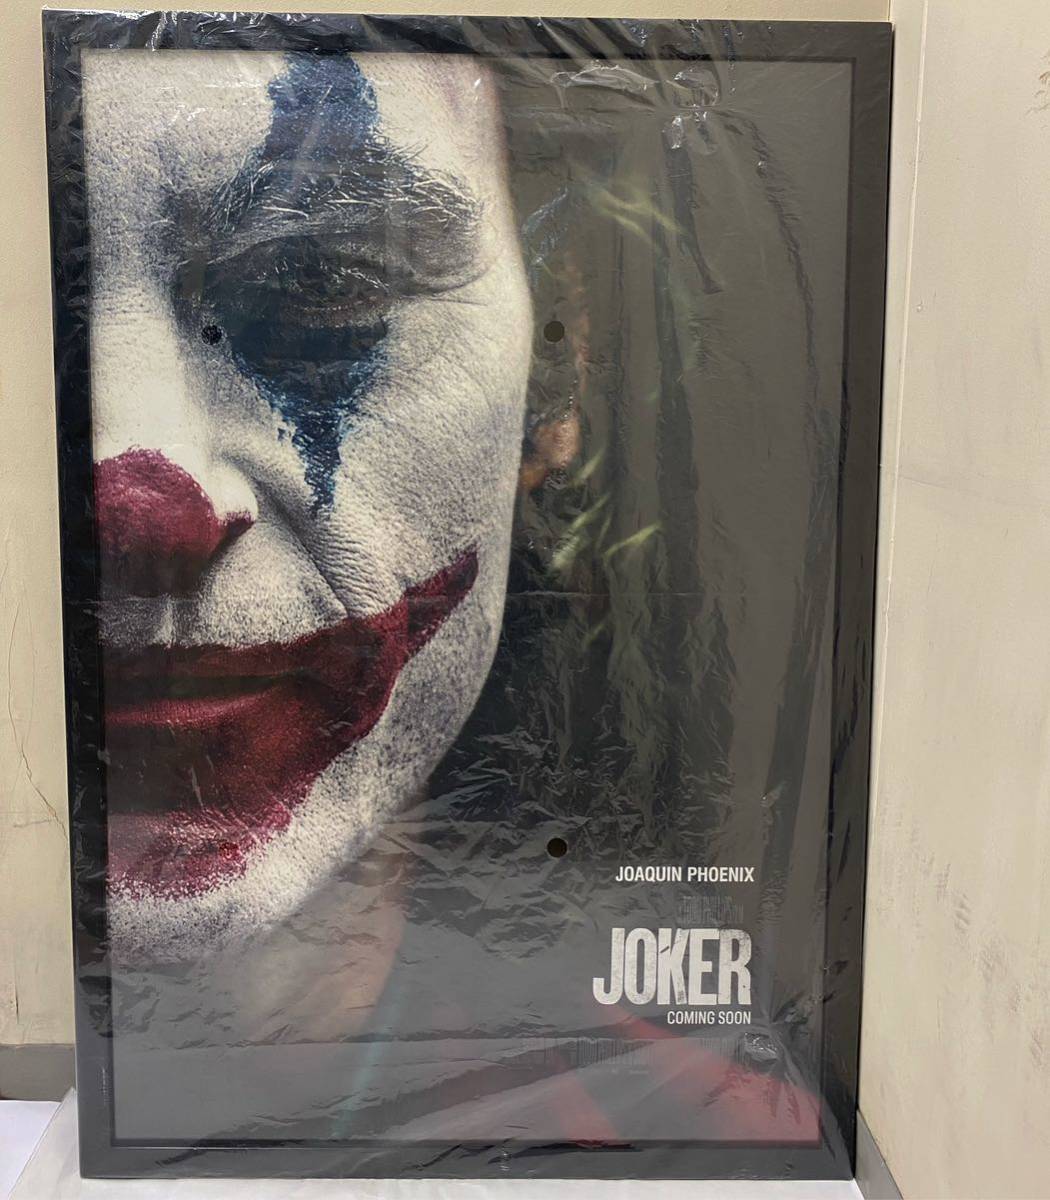 【貴重】 JOKER US版 オリジナルポスター プロモーション ホアキン・フェニックス Joaquin Phoenix BATMAN バットマン ジョーカー